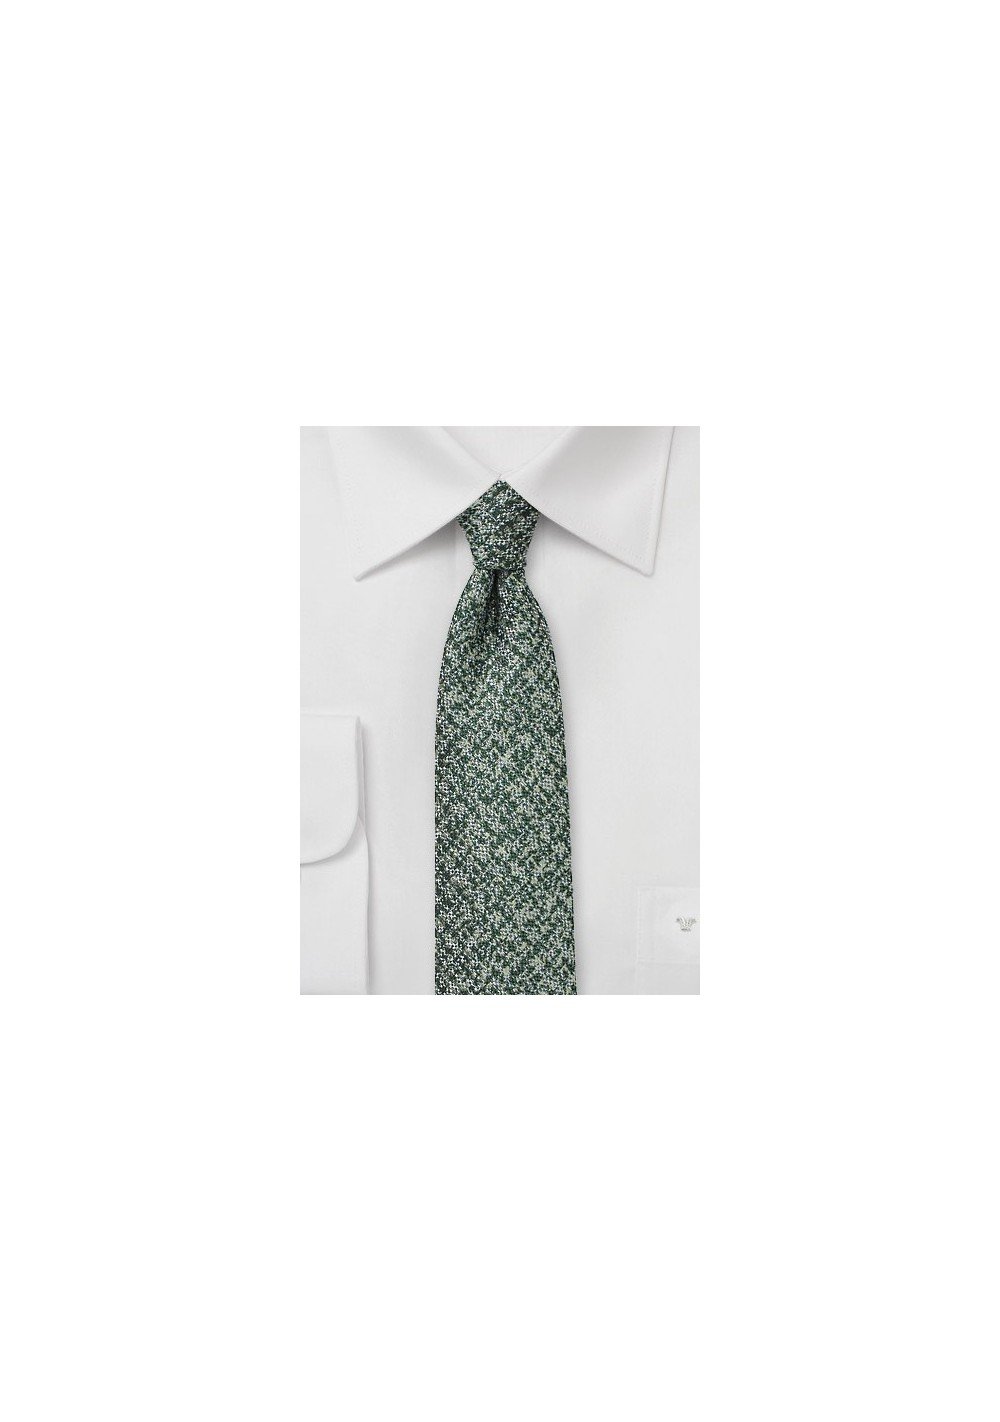 Tweed Skinny Tie in Pine Green